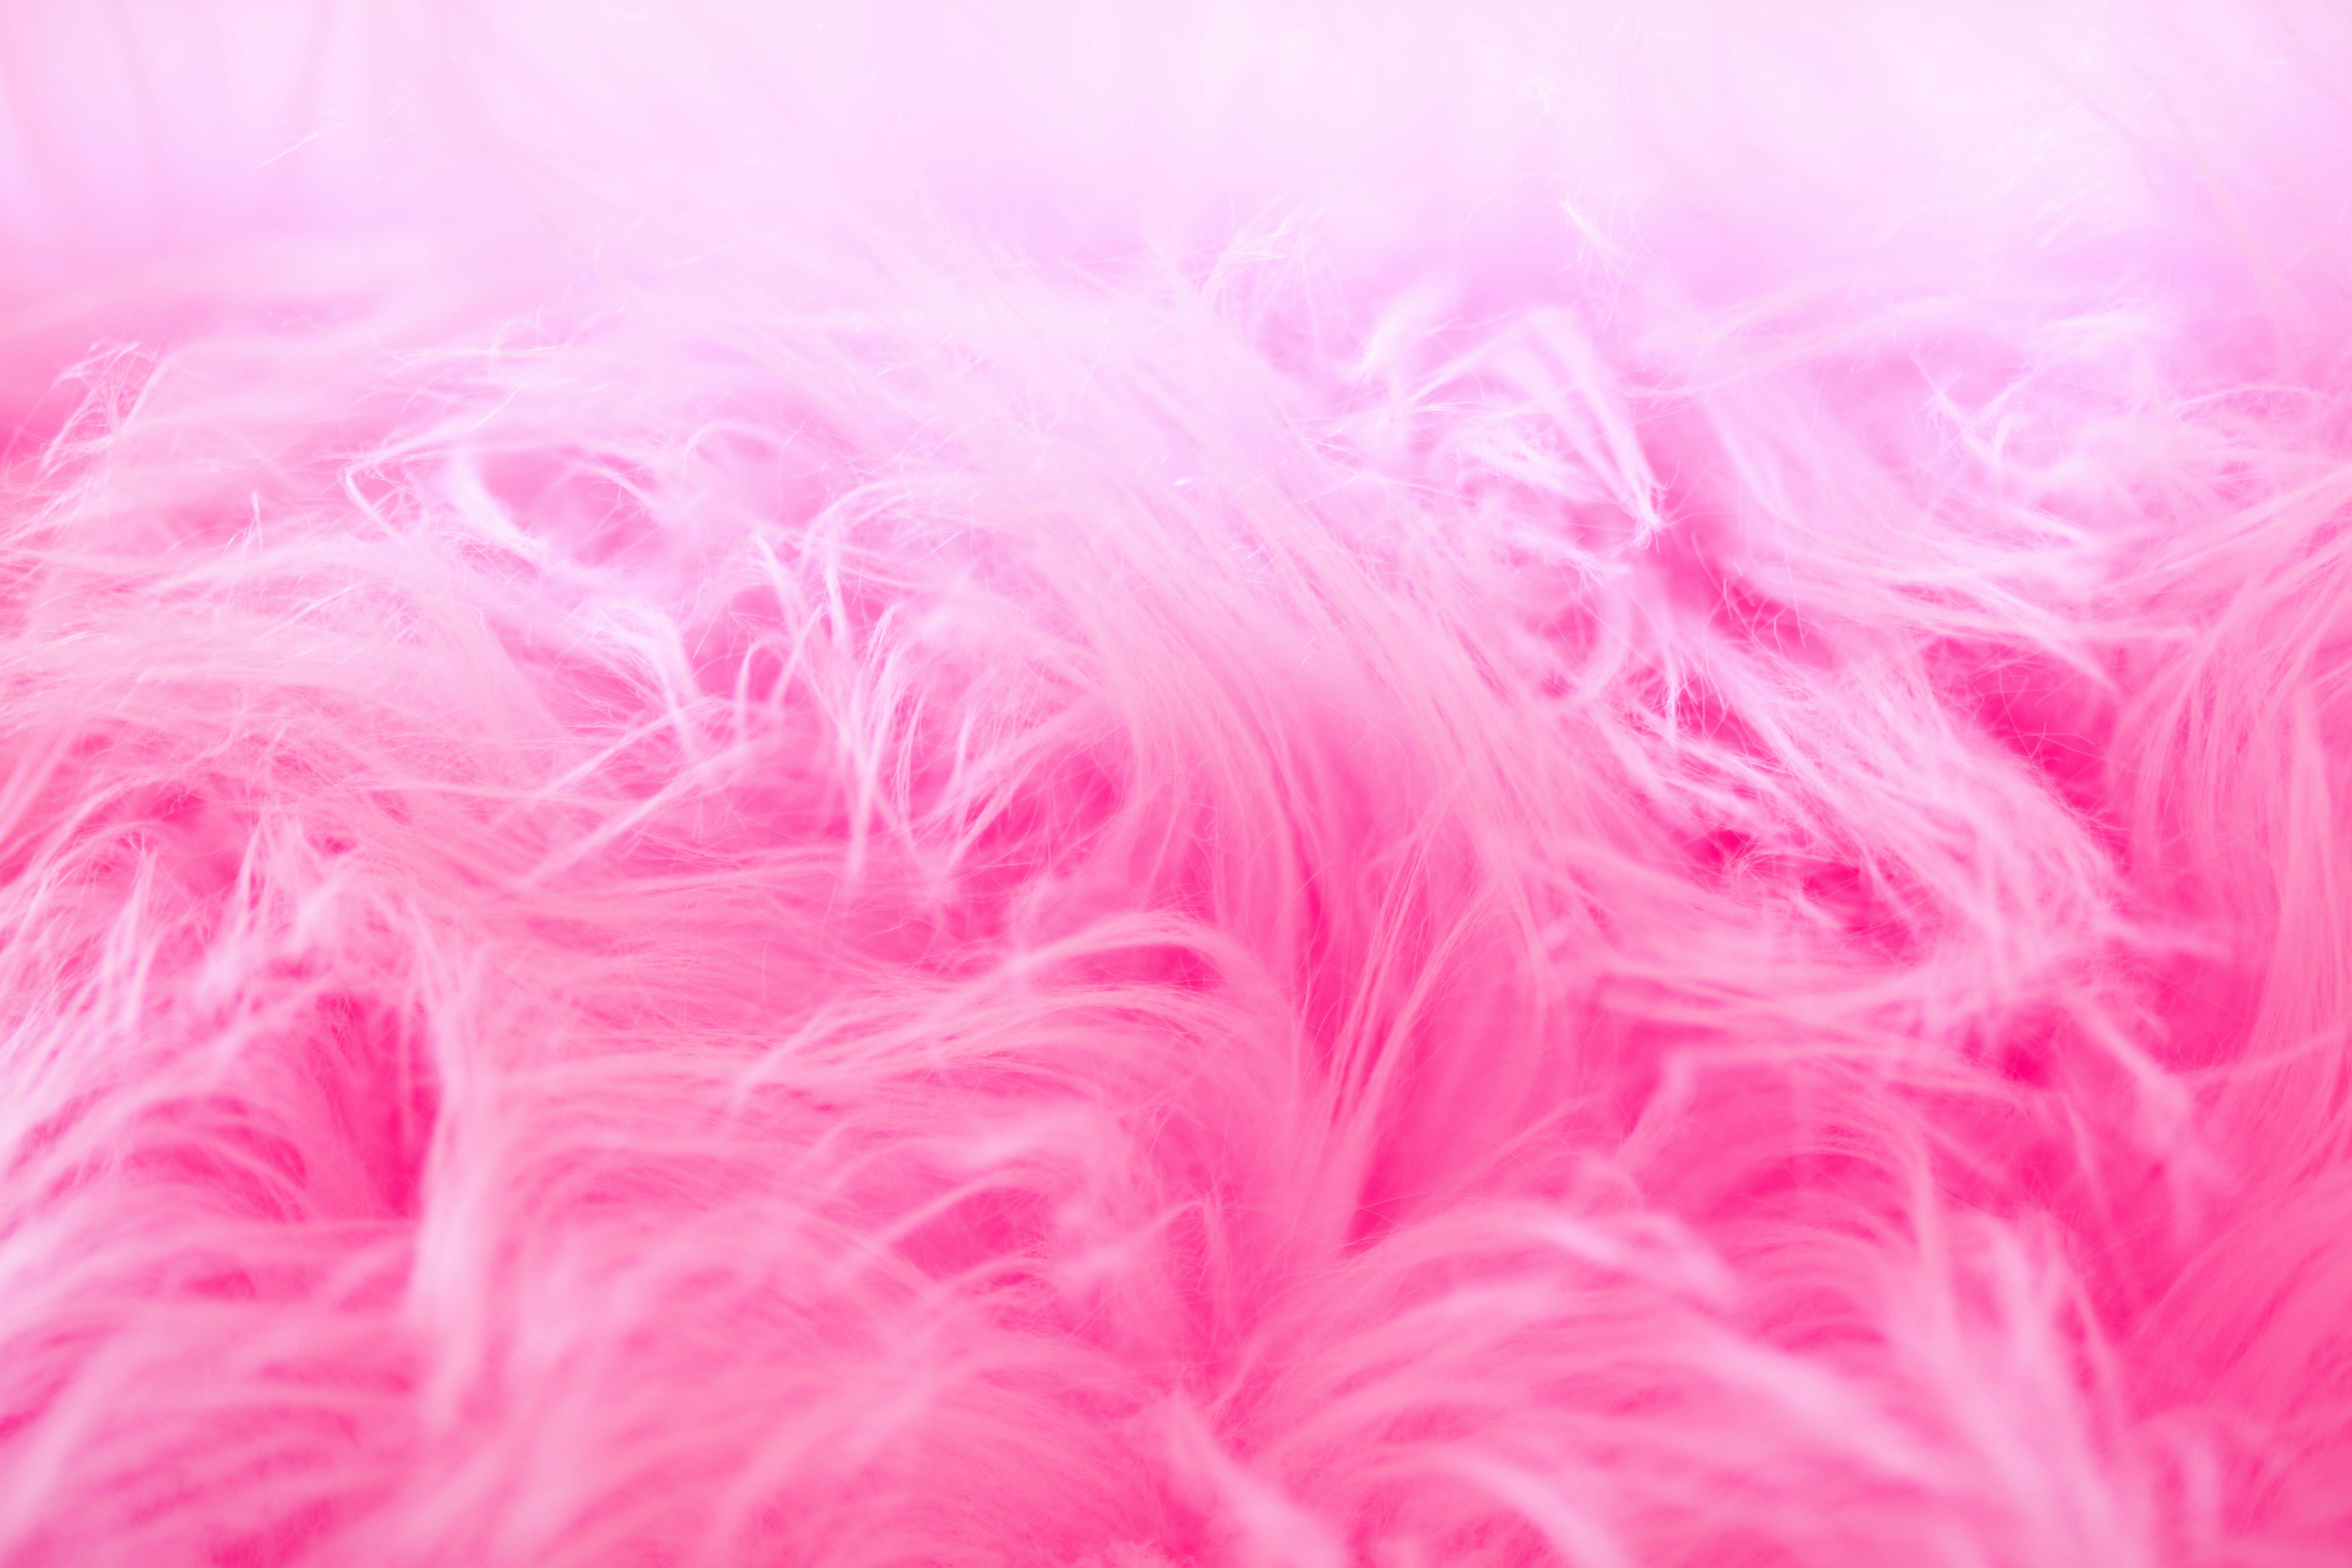 Pink Fur Closeup Photography Free Stock Photo